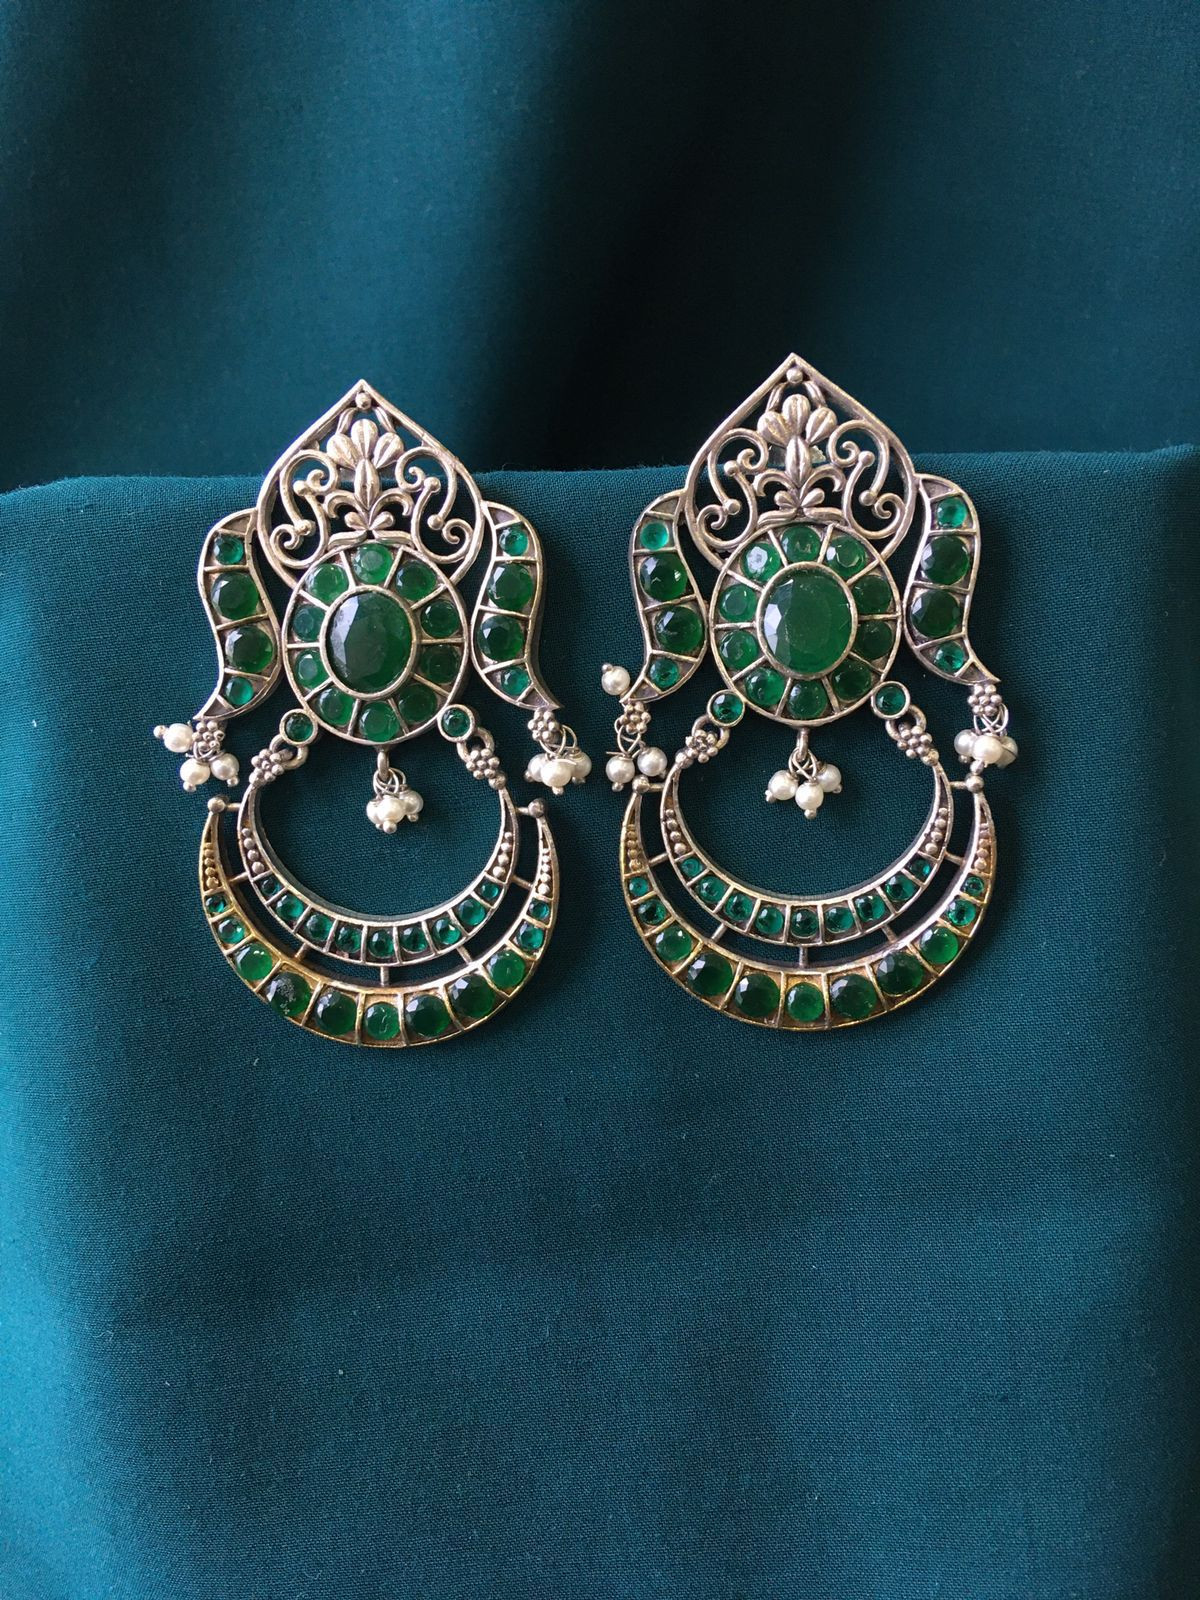 Stone Based Oxidized Earrings in Green